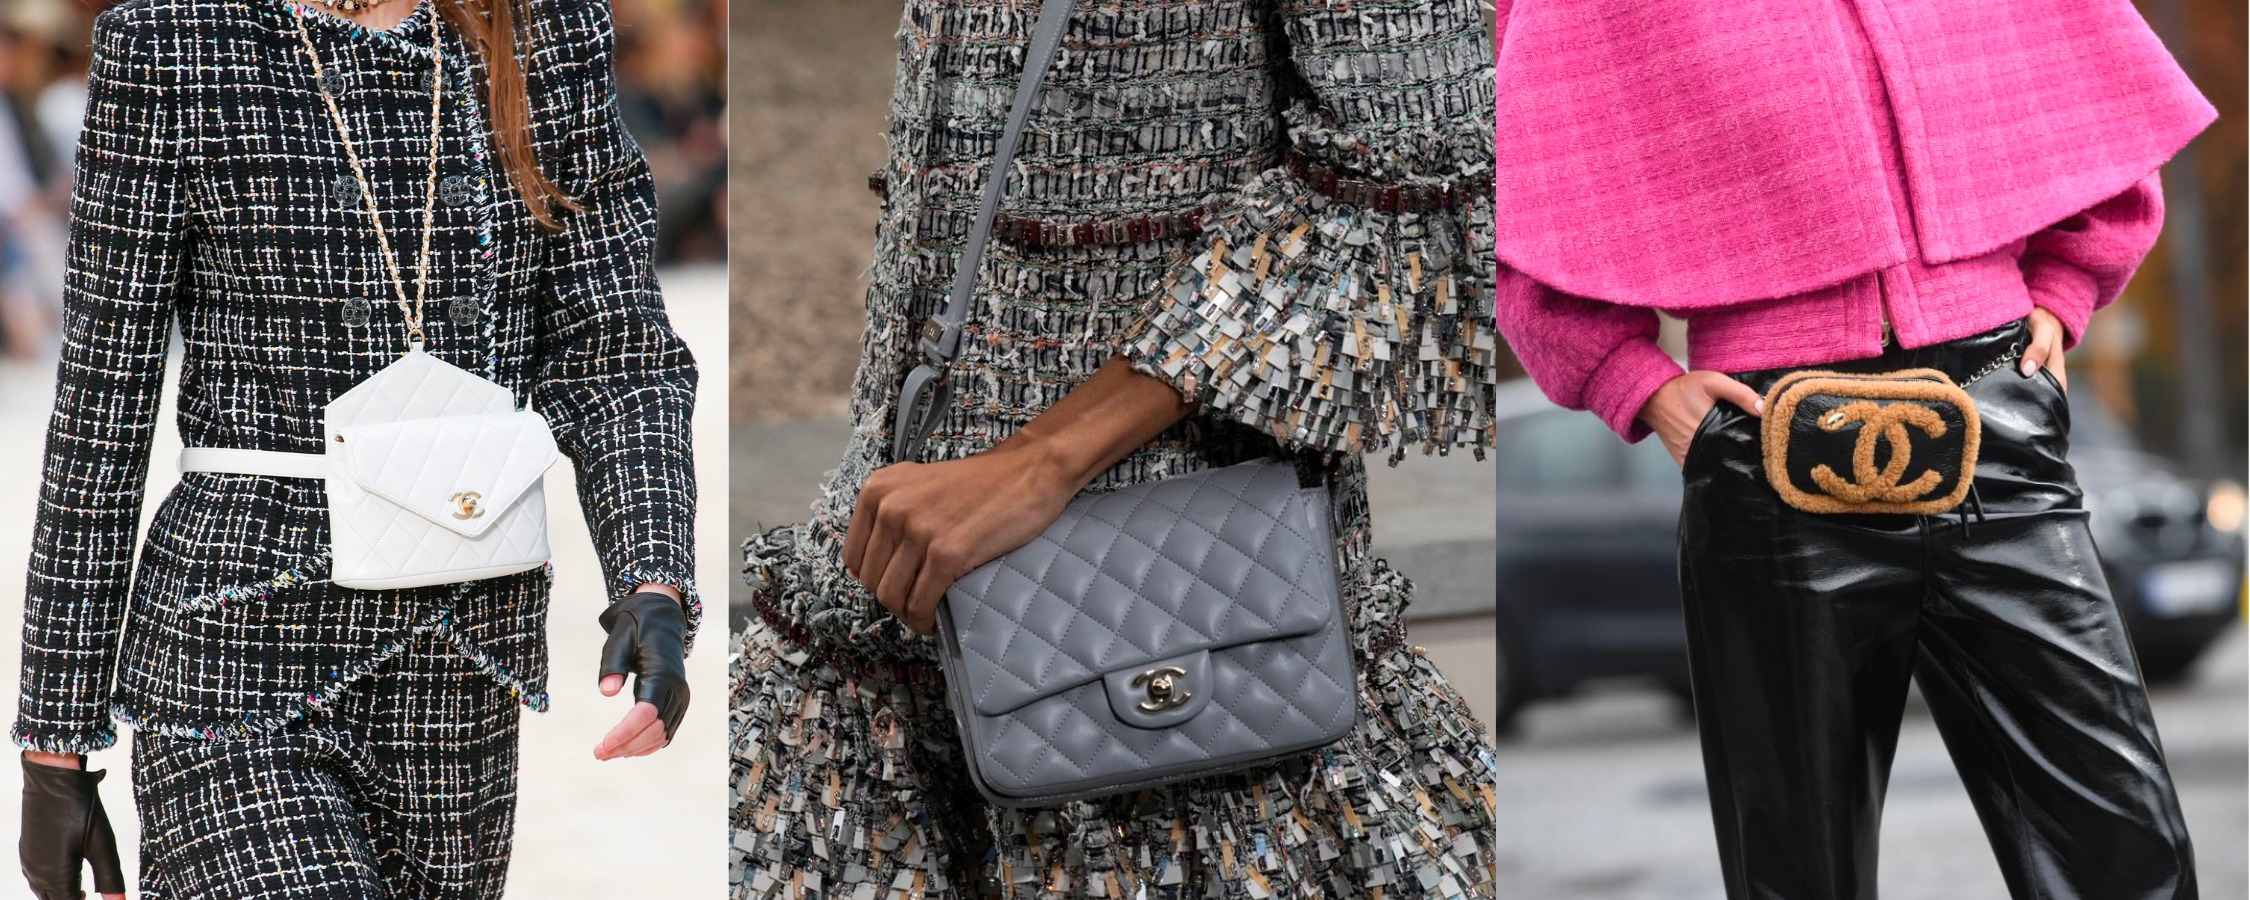 Como cuidar tus bolsos de lujo: Louis Vuitton, Chanel, Gucci 